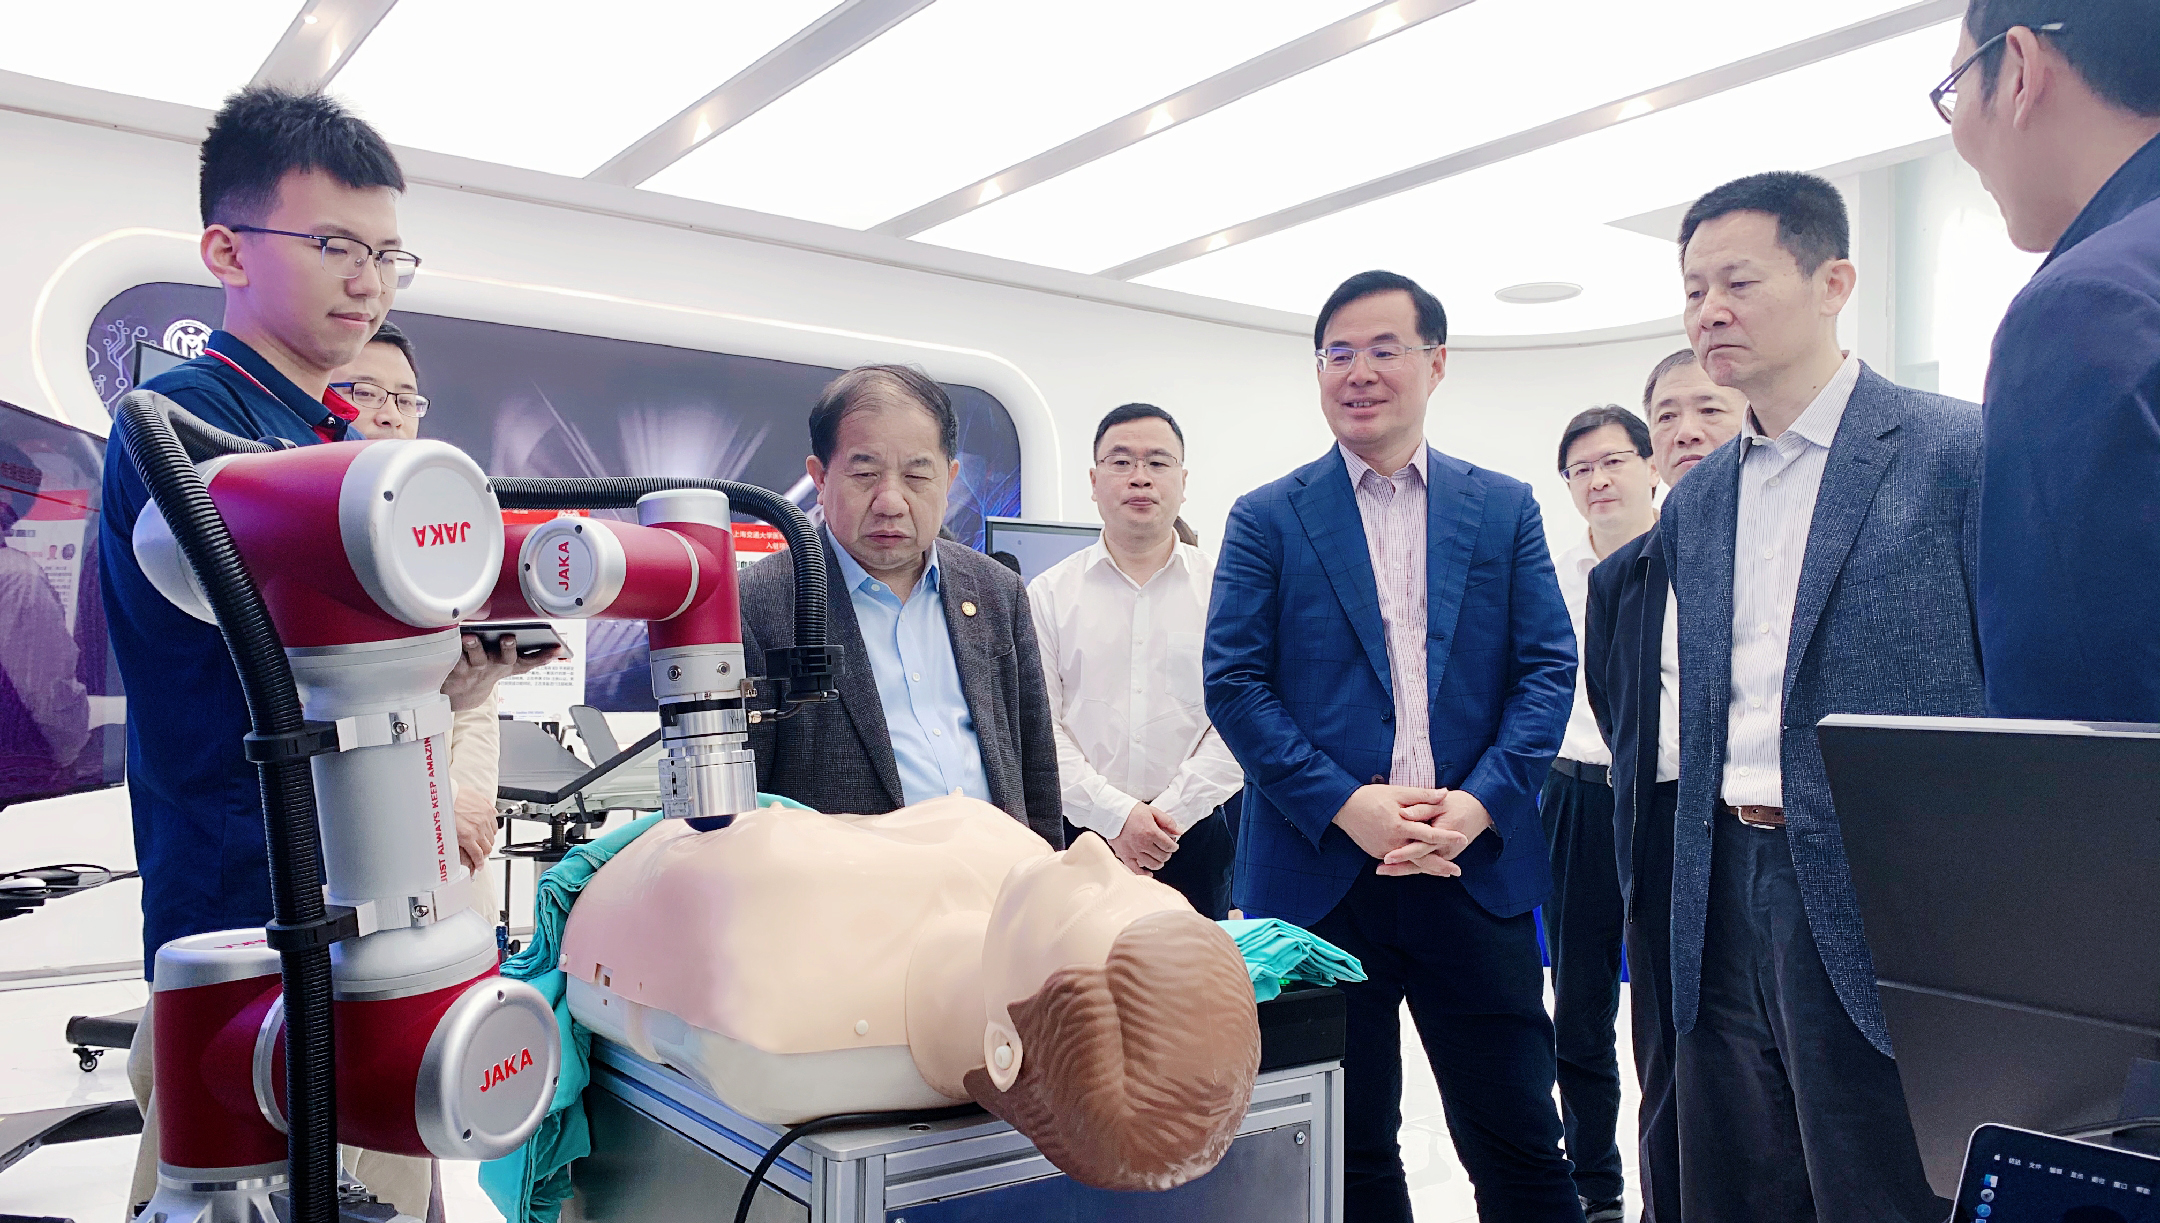 上海市政府及交大相关领导参观节卡机器人医疗应用展示项目